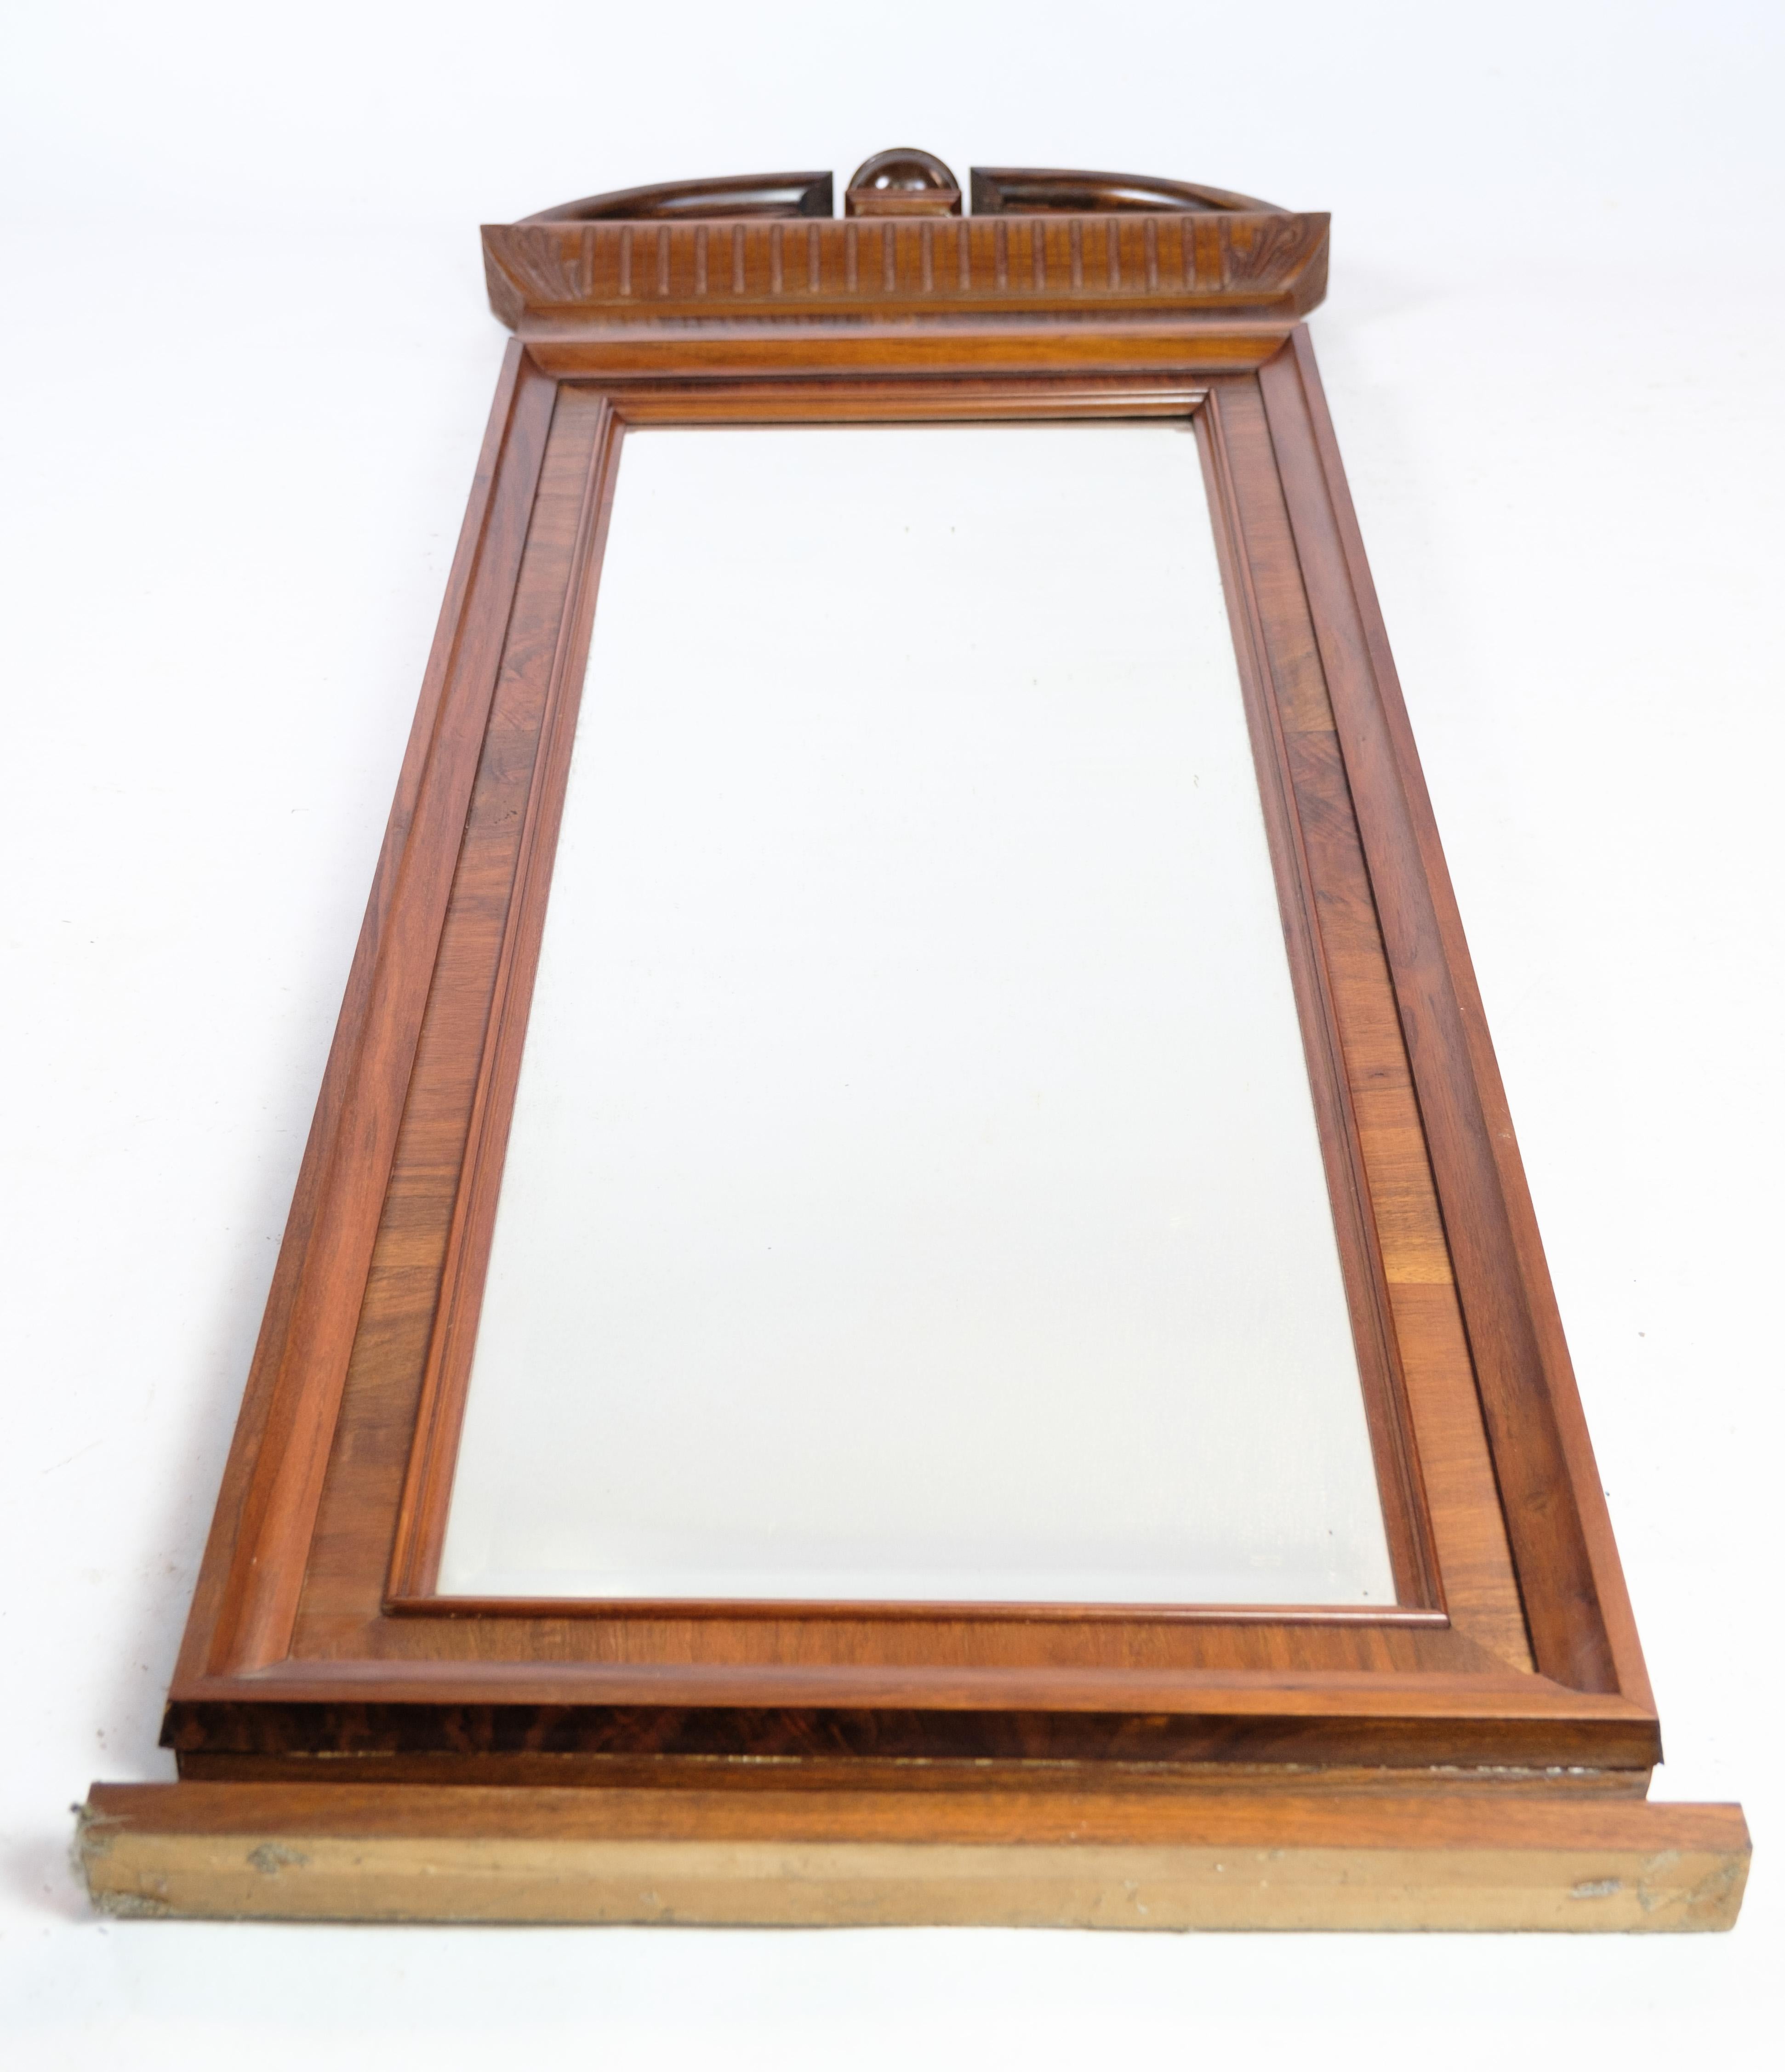 Spiegel aus handpoliertem Mahagoni, mit Schnitzereien, hergestellt in Dänemark um 1880
Maße in cm: H:183 B:57